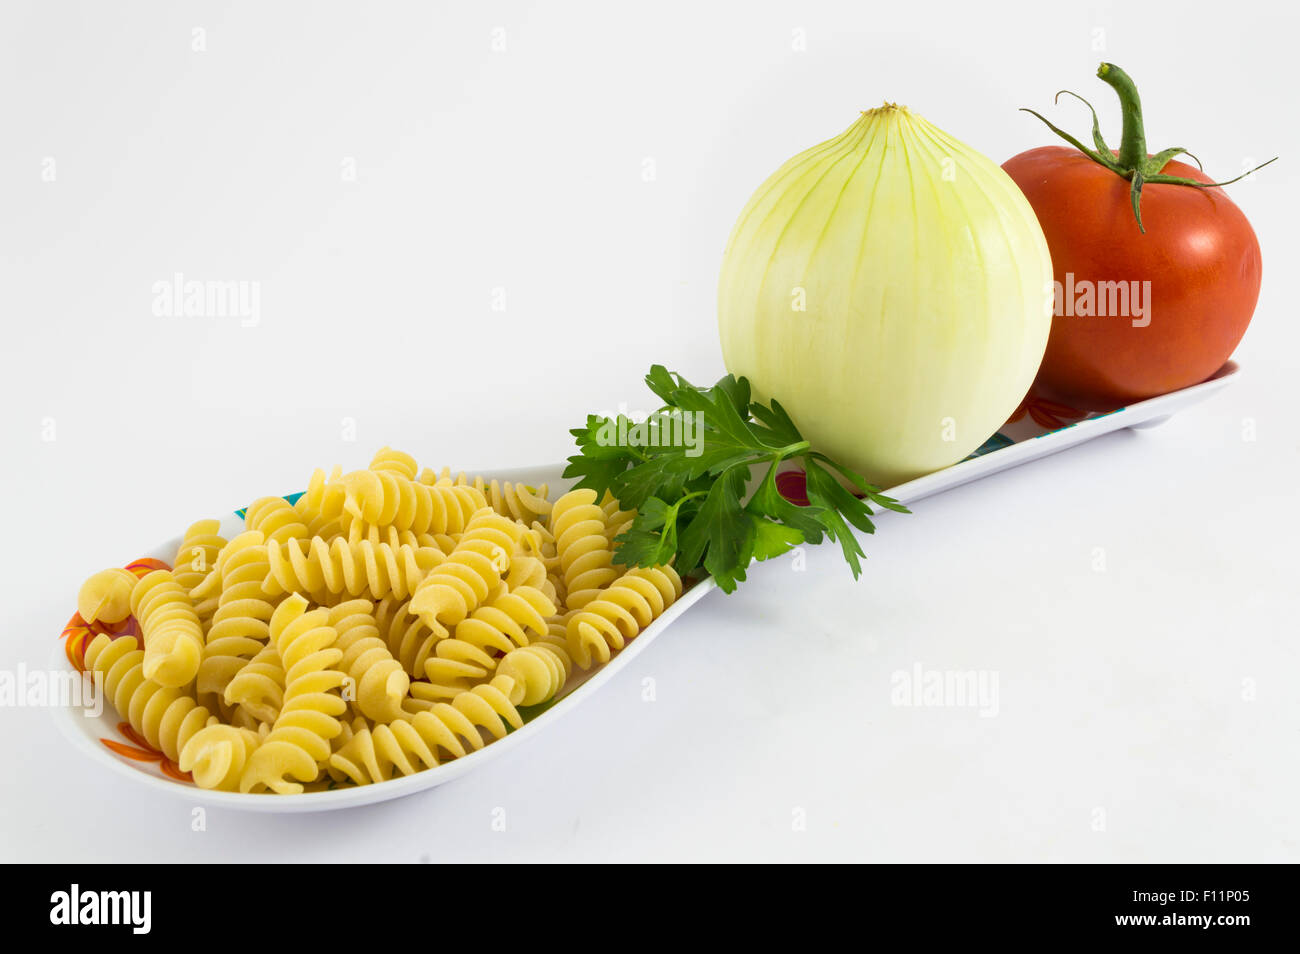 L'oignon, la tomate, le persil et les pâtes sur fond blanc Banque D'Images